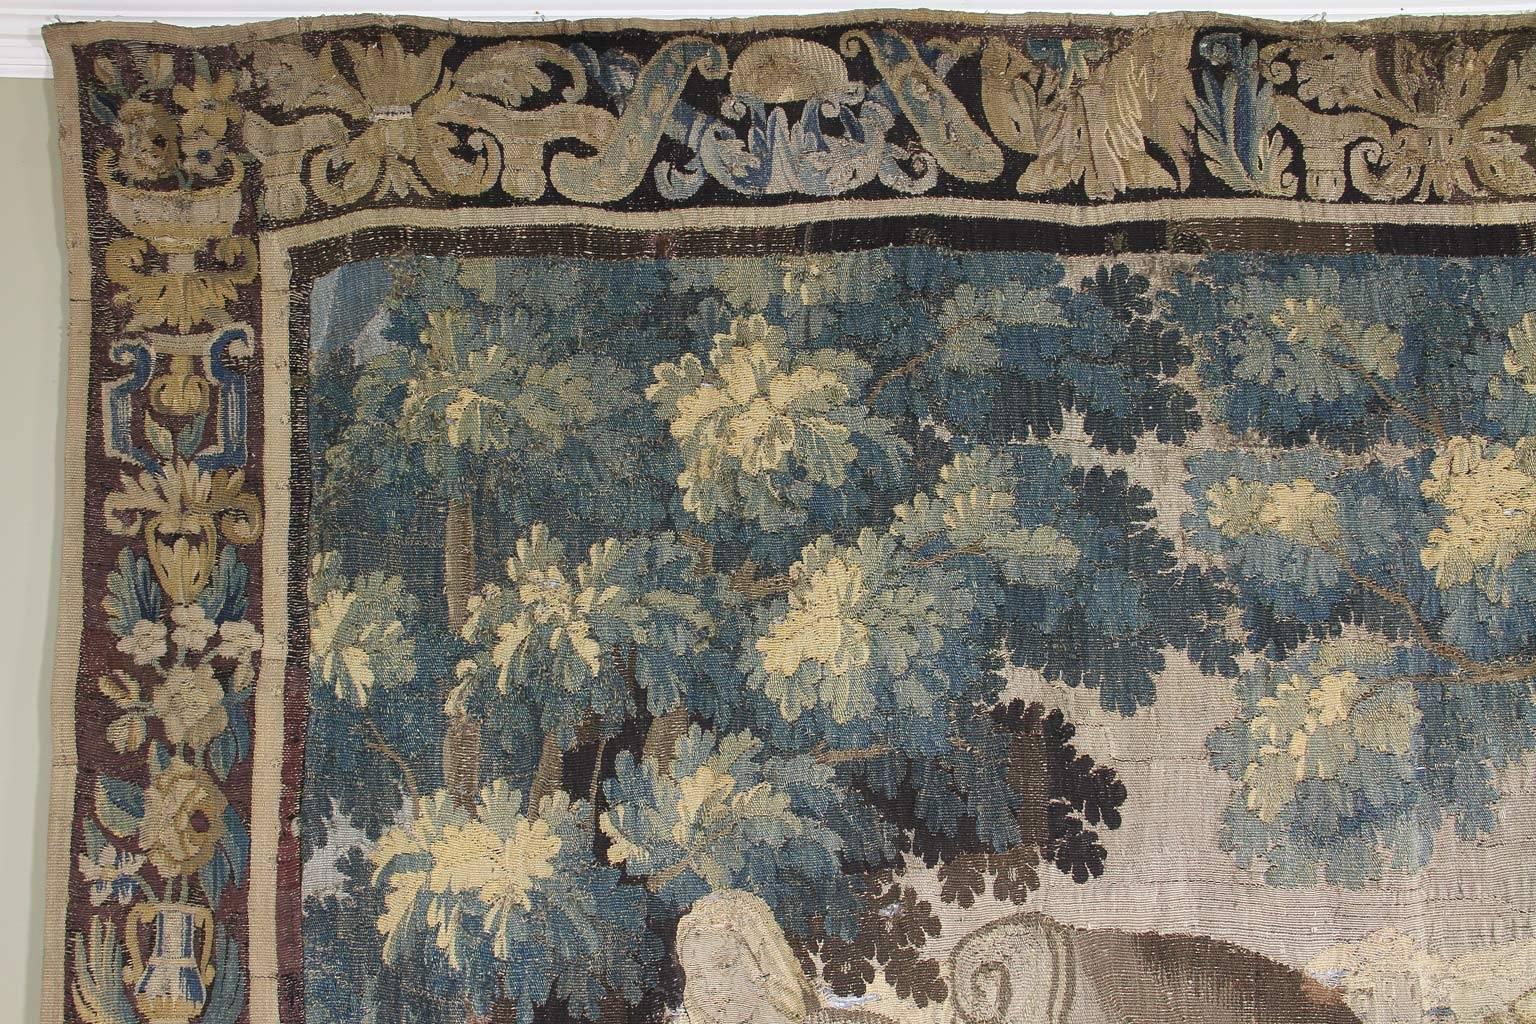 Rechteckig mit Blatt-, Blumen- und Vasenbordüre, die Szene zeigt einen Mann, der Brot im Ofen backt, eine Frau, die an einem Tisch steht, und Kinder, die mit einer Burg im Hintergrund und Bäumen und Pflanzen im Vordergrund herumtollen.